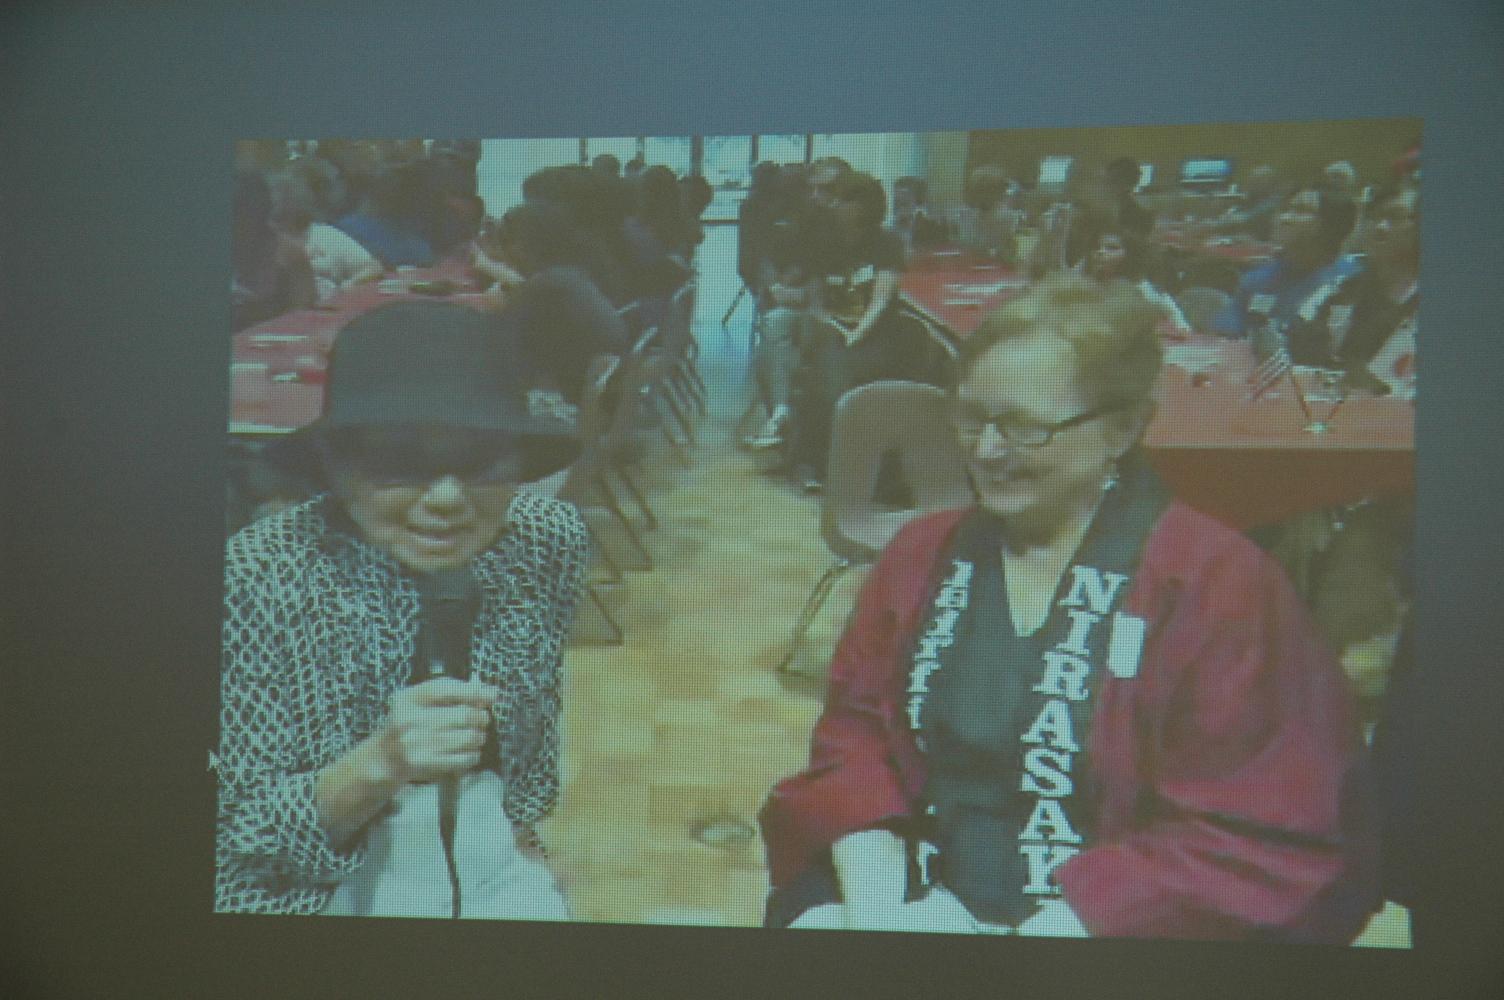 スクリーンに映し出された黒い帽子を被り眼鏡をかけ、手にマイクを持っているキエコ ウィタカーさんとアーレッタ コートライトさんの写真